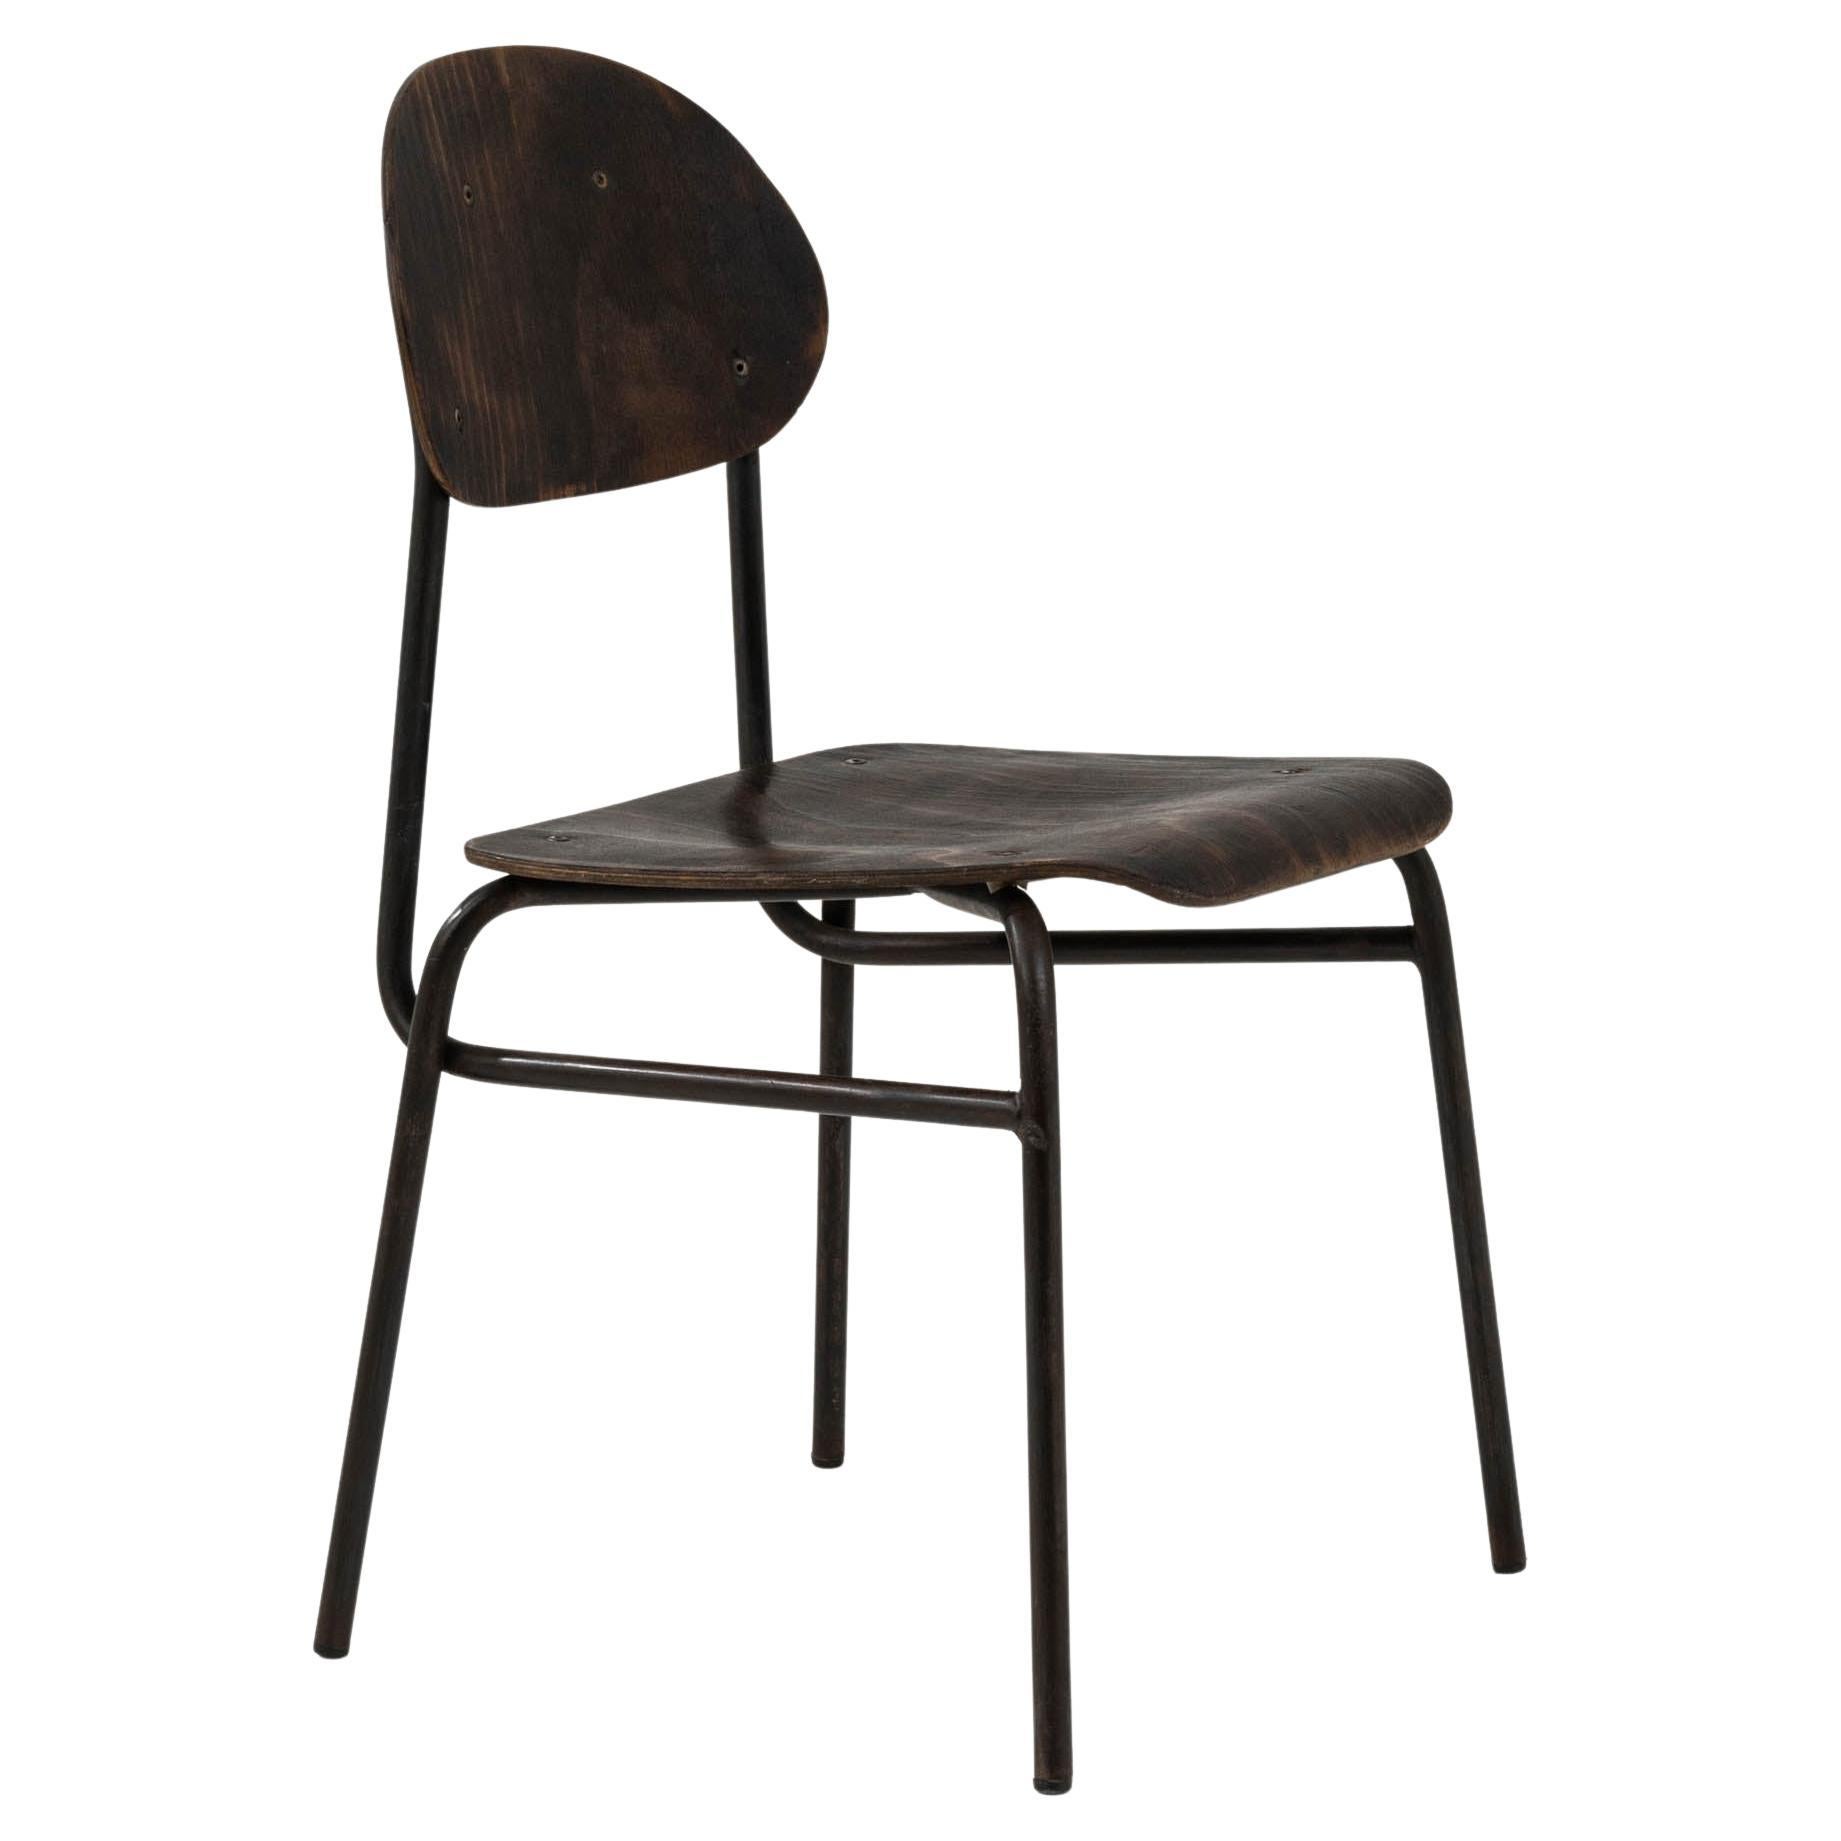 Mitteleuropäischer Stuhl aus Metall und Holz des 20. Jahrhunderts